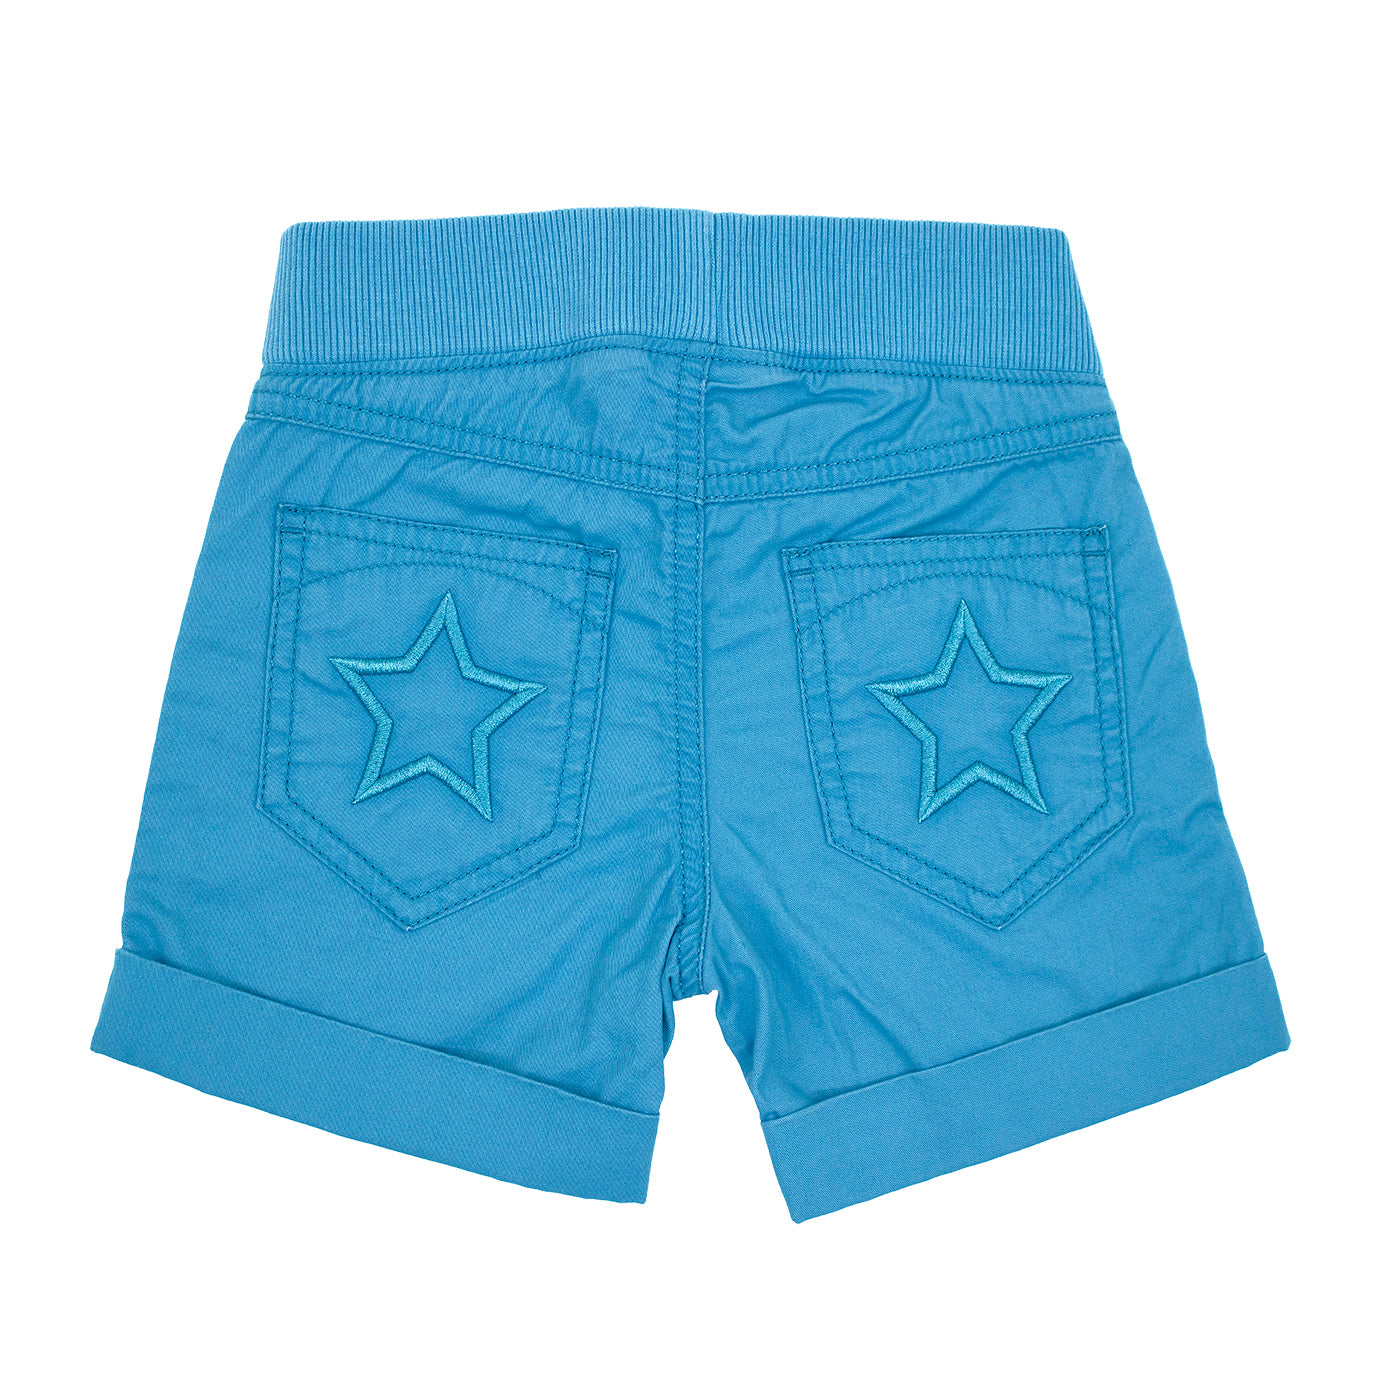 Villervalla Star Shorts Canvas - Atlantis